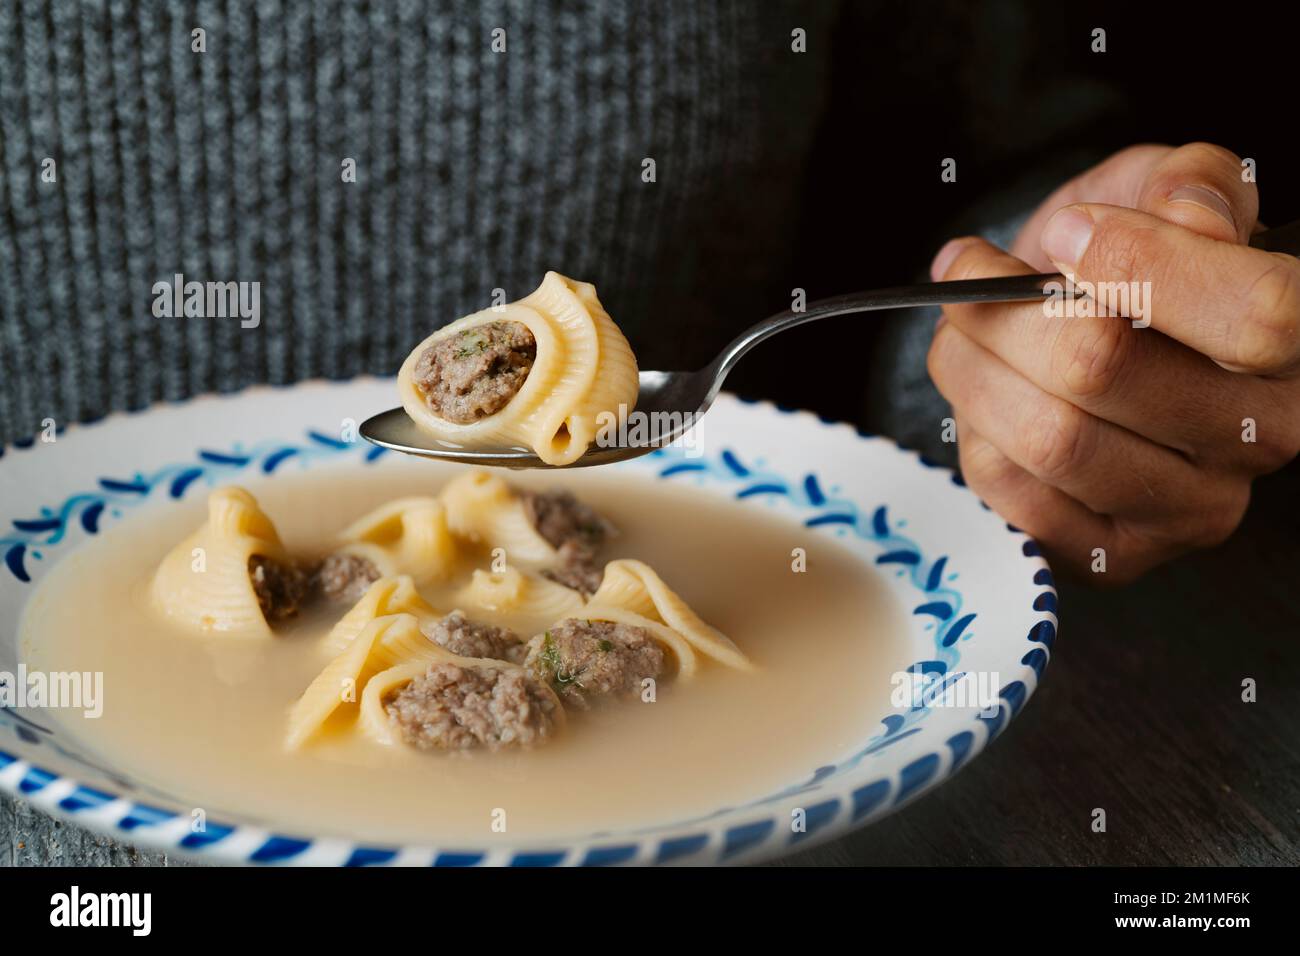 Die Nahaufnahme eines Mannes, der kurz davor steht, etwas Escudella de Nadal zu essen, auch bekannt als sopa de Galets, eine Suppe mit Galets Pasta, die typischerweise zu Weihnachten in Katalon gegessen wird Stockfoto